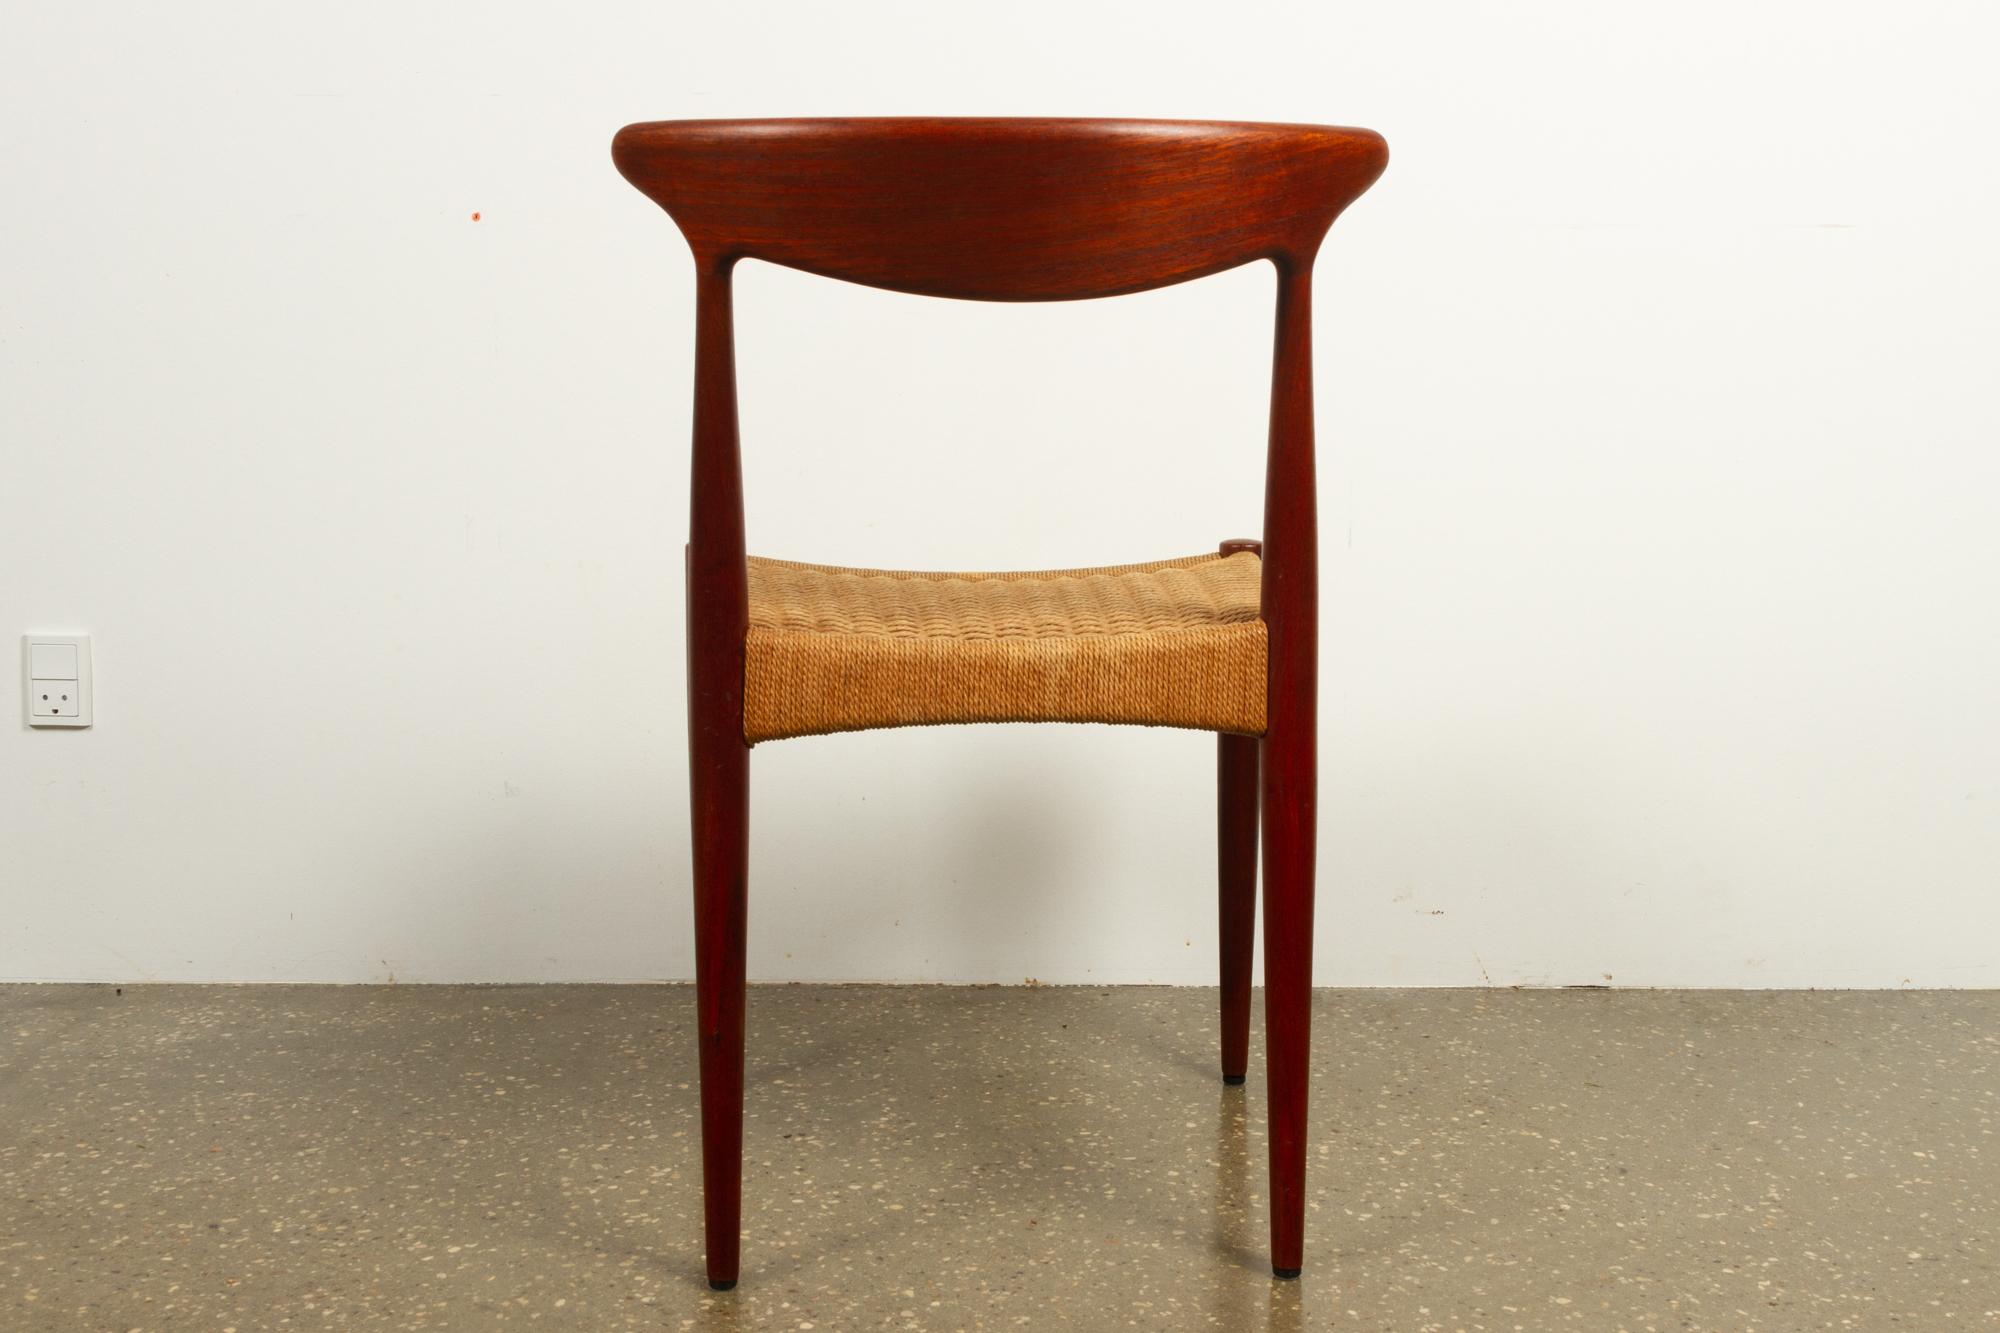 Papercord Vintage Danish Teak Chair by Arne Hovmand-Olsen for Mogens Kold, 1950s